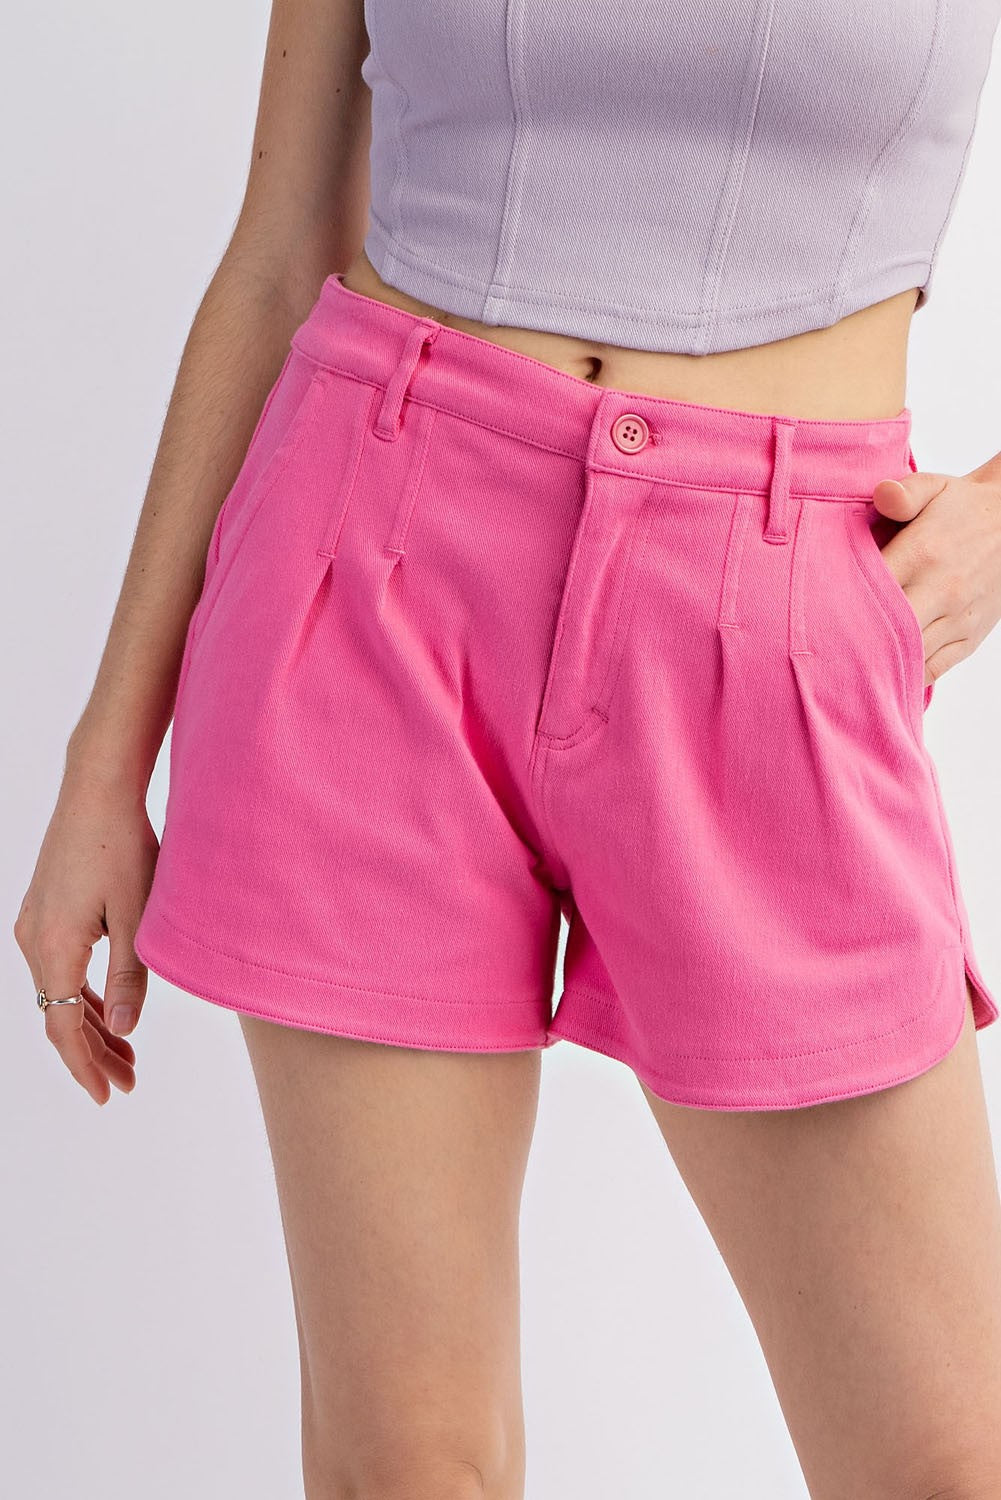 PREORDER Hugh Cotton Twill Shorts (Hot Pink) - NanaMacs